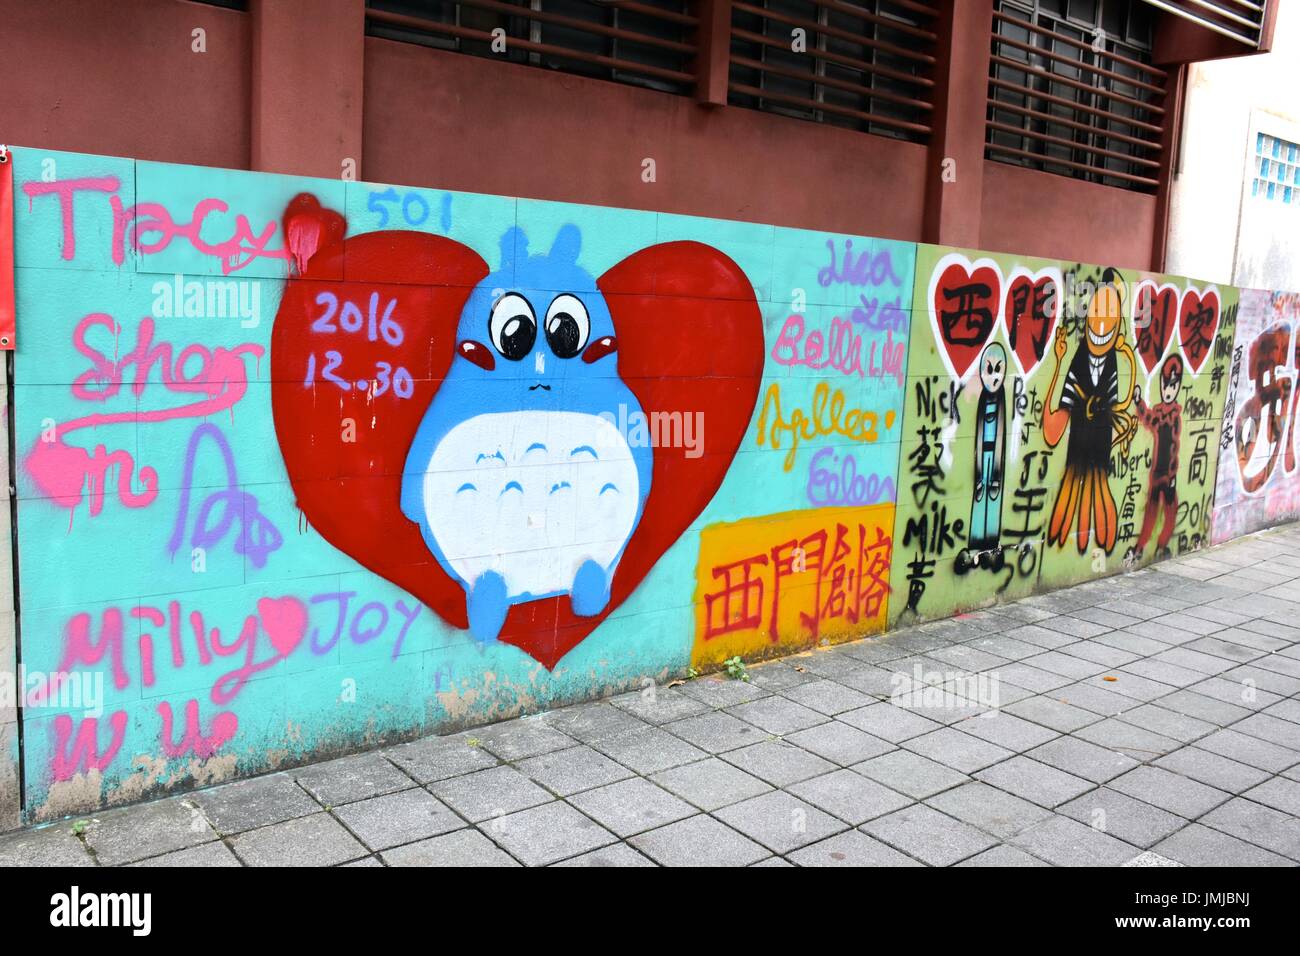 L'École élémentaire Municipal de Taipei Ximen, Taiwan. Grades K-6. Les élèves street art graffiti sur mur extérieur de l'école. Banque D'Images